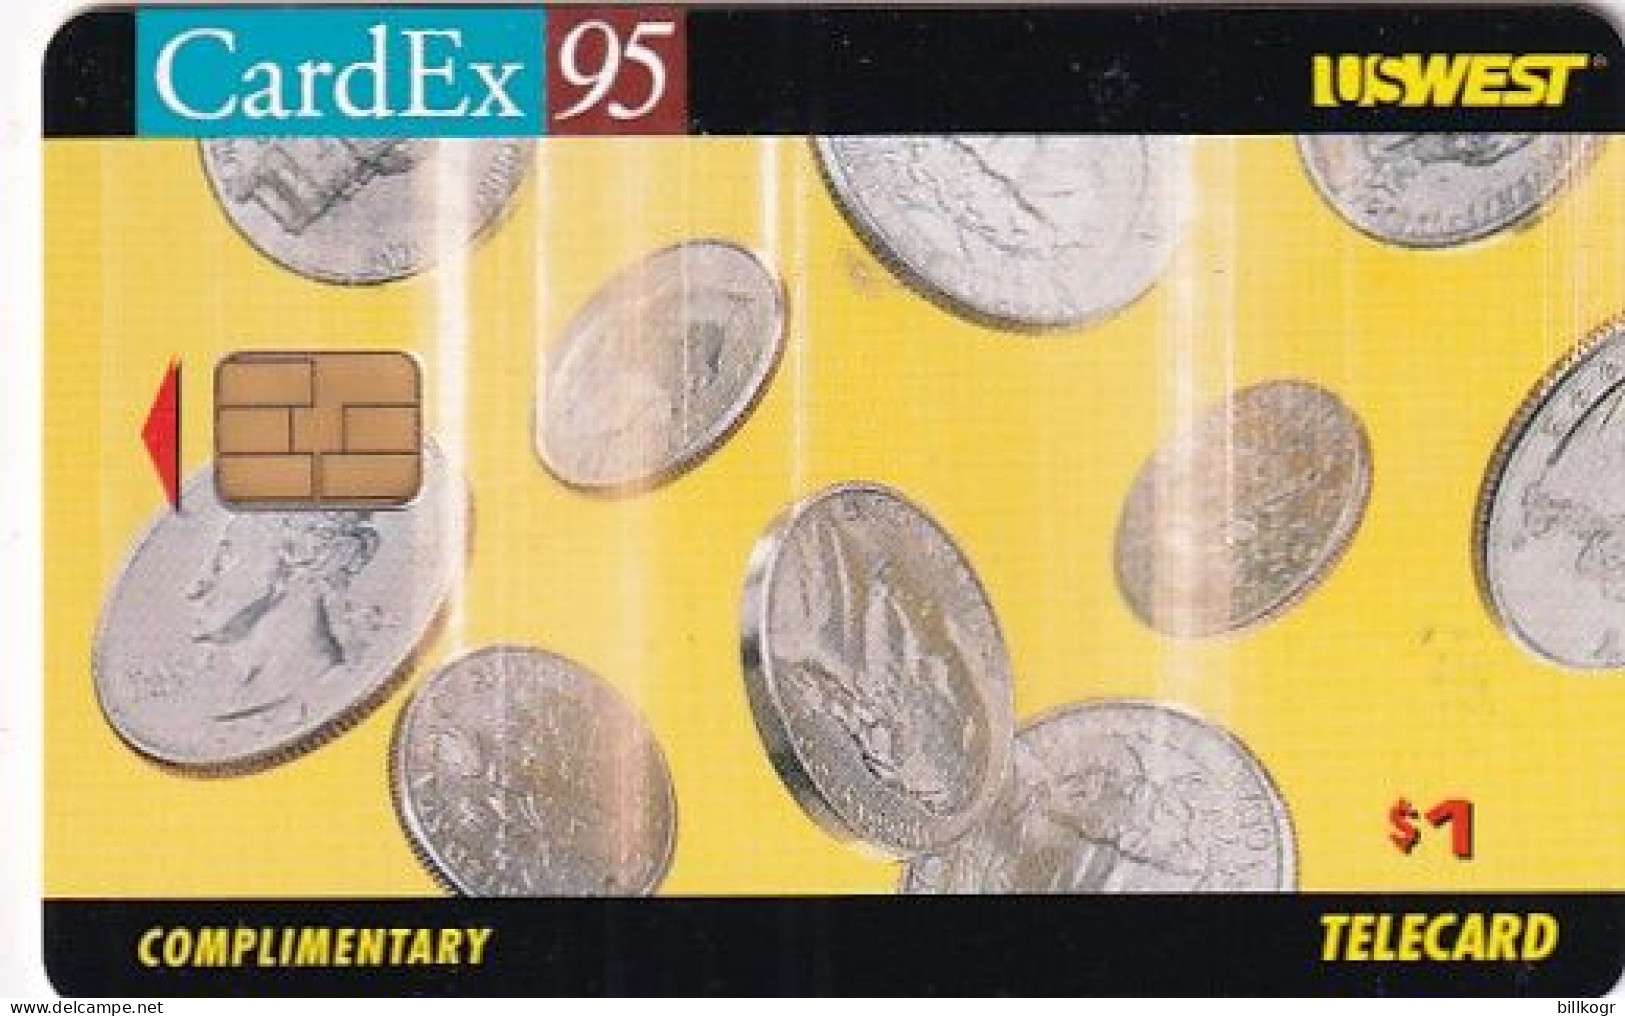 USA - CardEx 95 Maastricht, US WEST Complimentary Telecard, Tirage 1000, 09/95, Mint - [2] Chipkarten